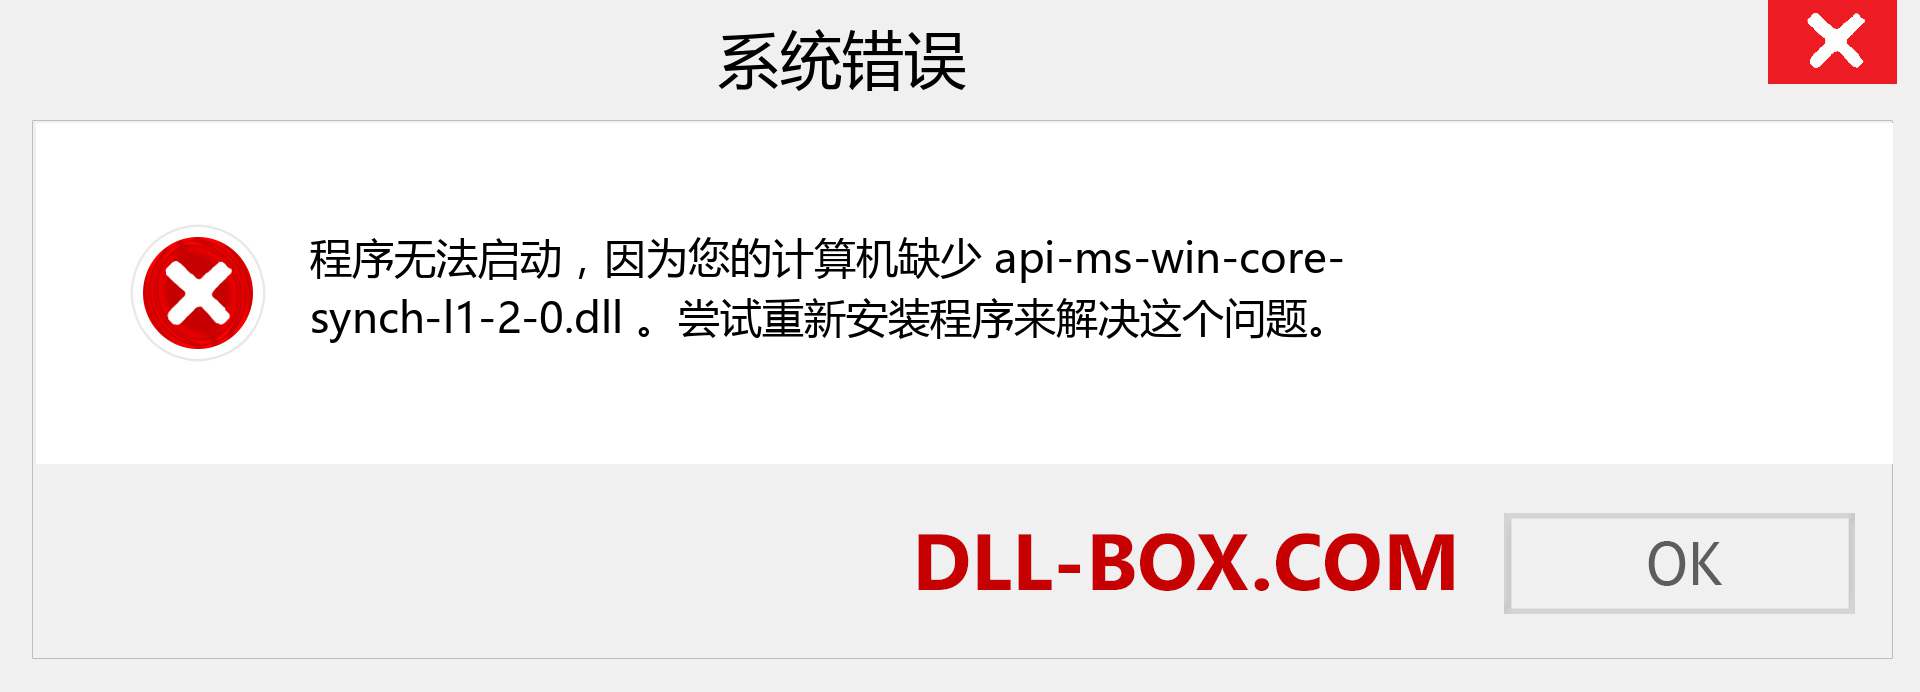 api-ms-win-core-synch-l1-2-0.dll 文件丢失？。 适用于 Windows 7、8、10 的下载 - 修复 Windows、照片、图像上的 api-ms-win-core-synch-l1-2-0 dll 丢失错误